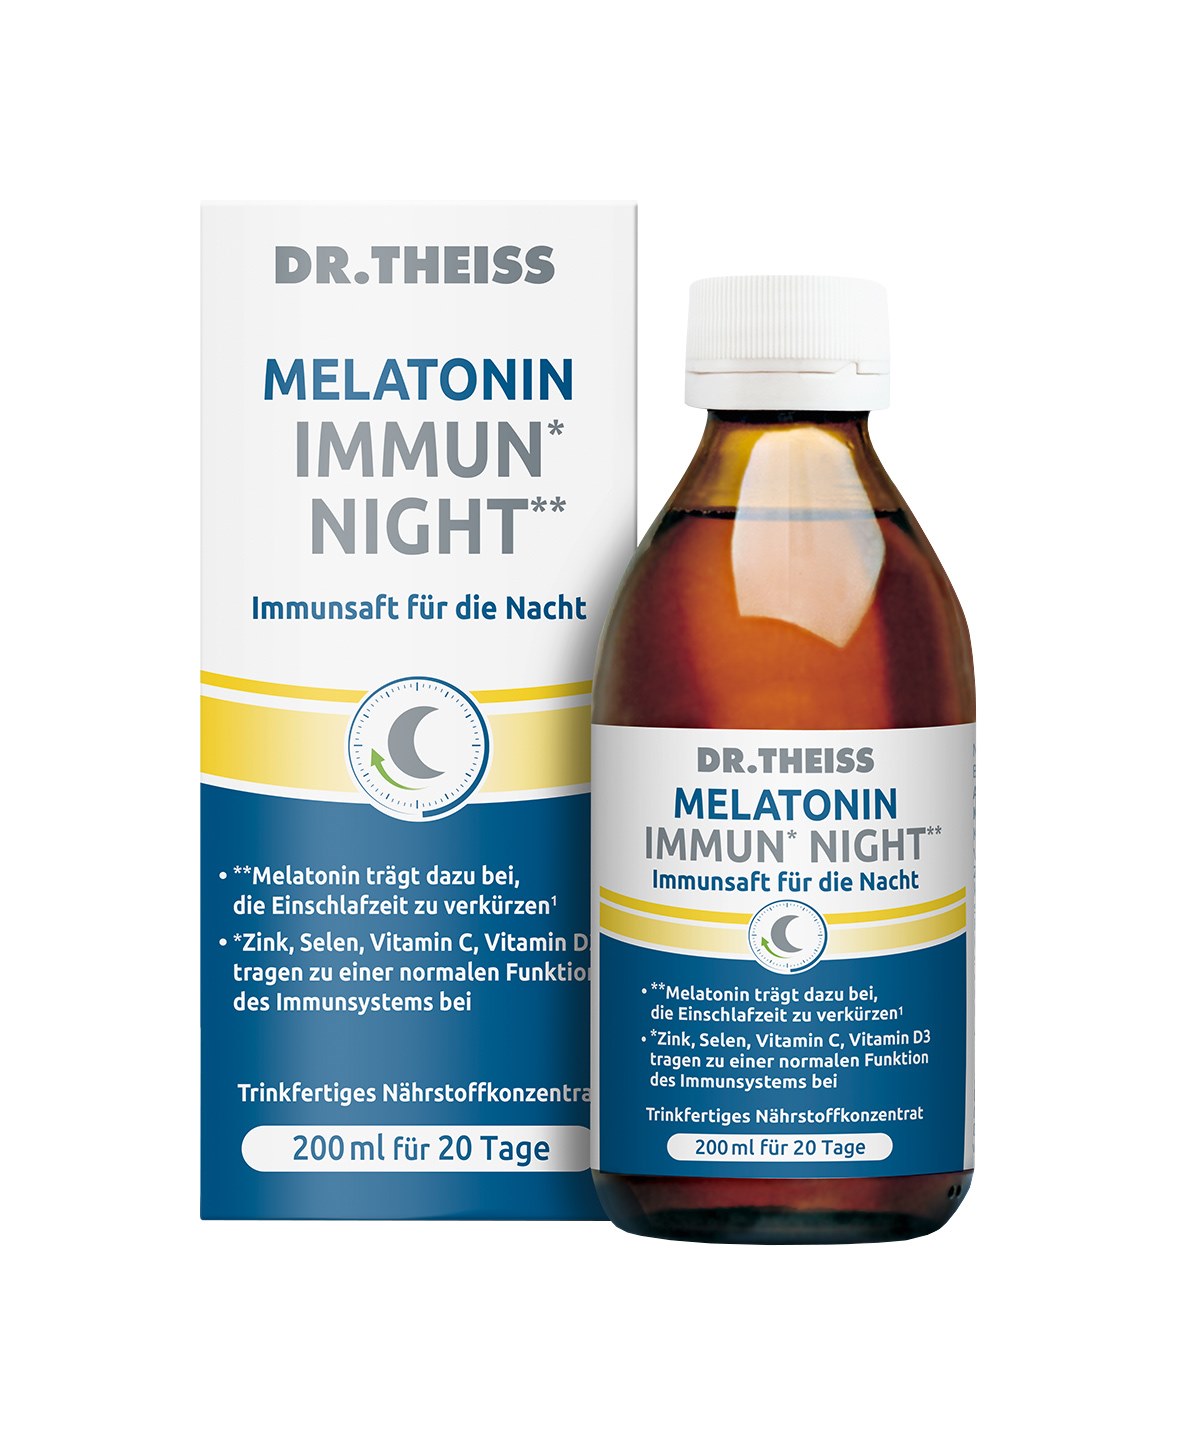 DR. THEISS IMMUN NIGHT Immunsaft für die Nacht Box u. Flasche